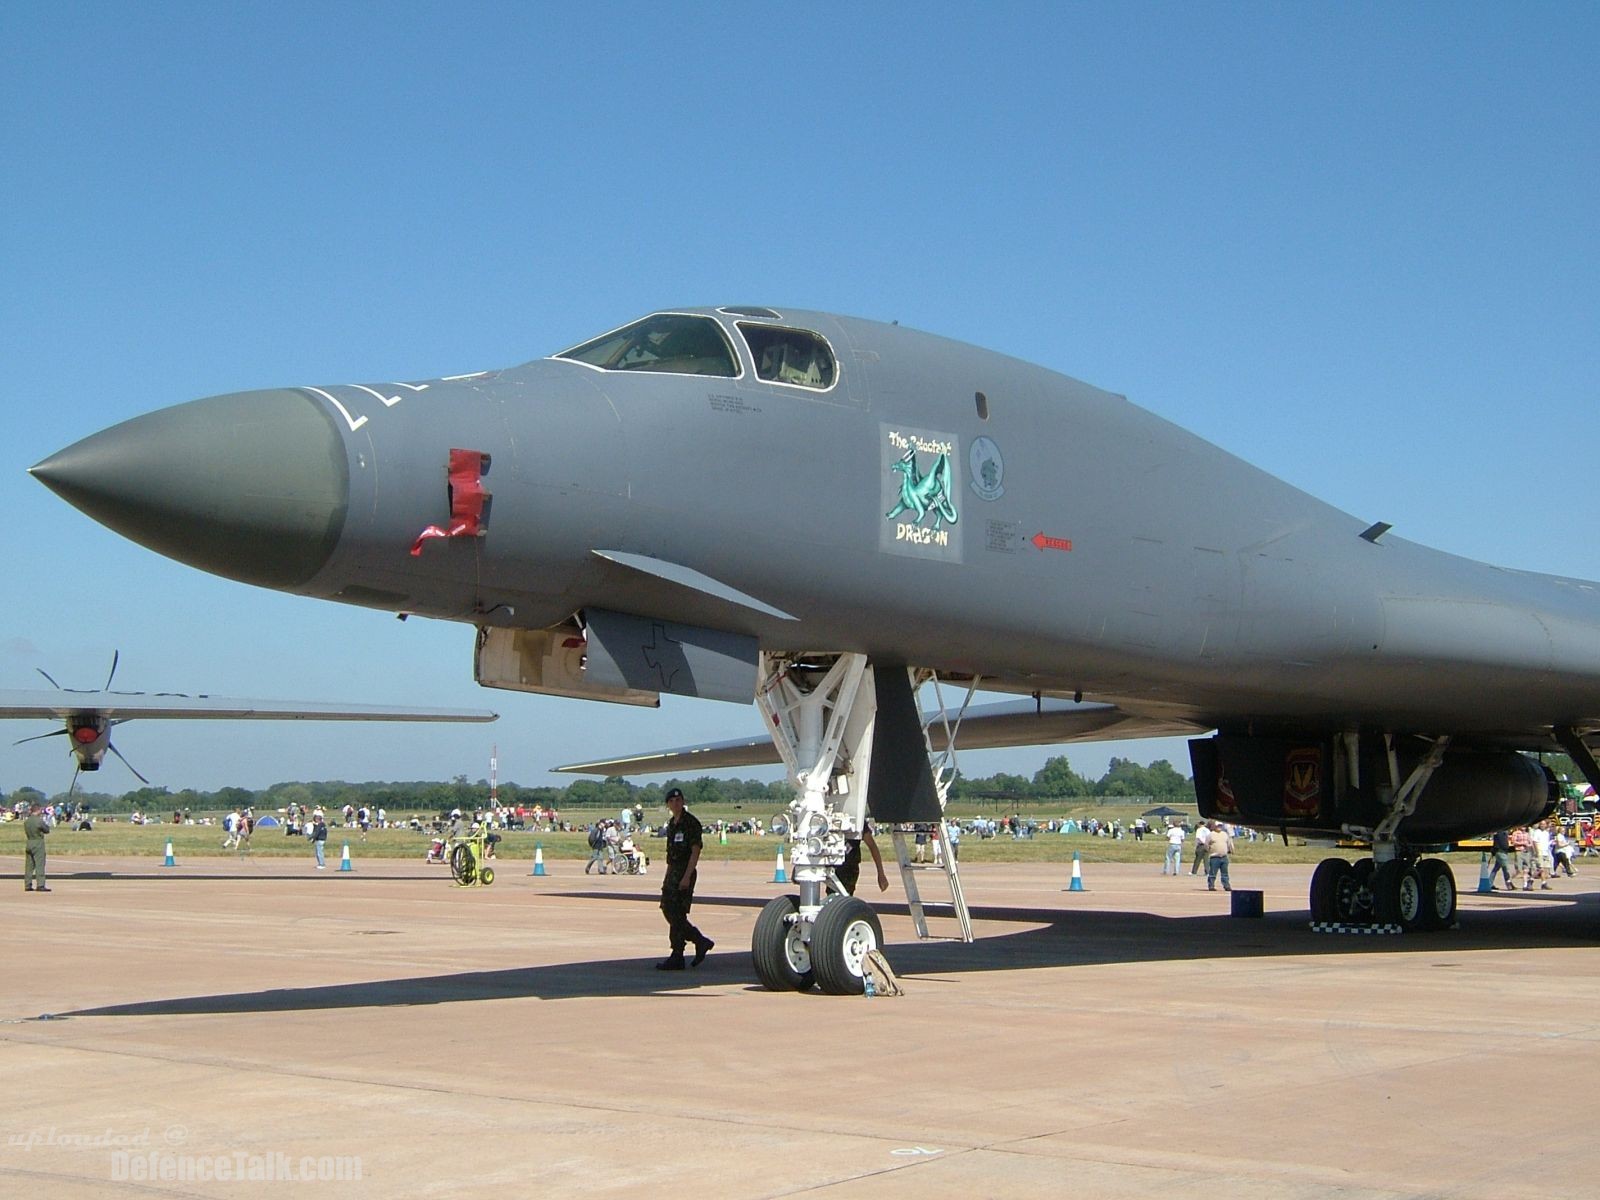 B-1B Bomber - RIAT 2006 Air show (The Royal International Air Tattoo)